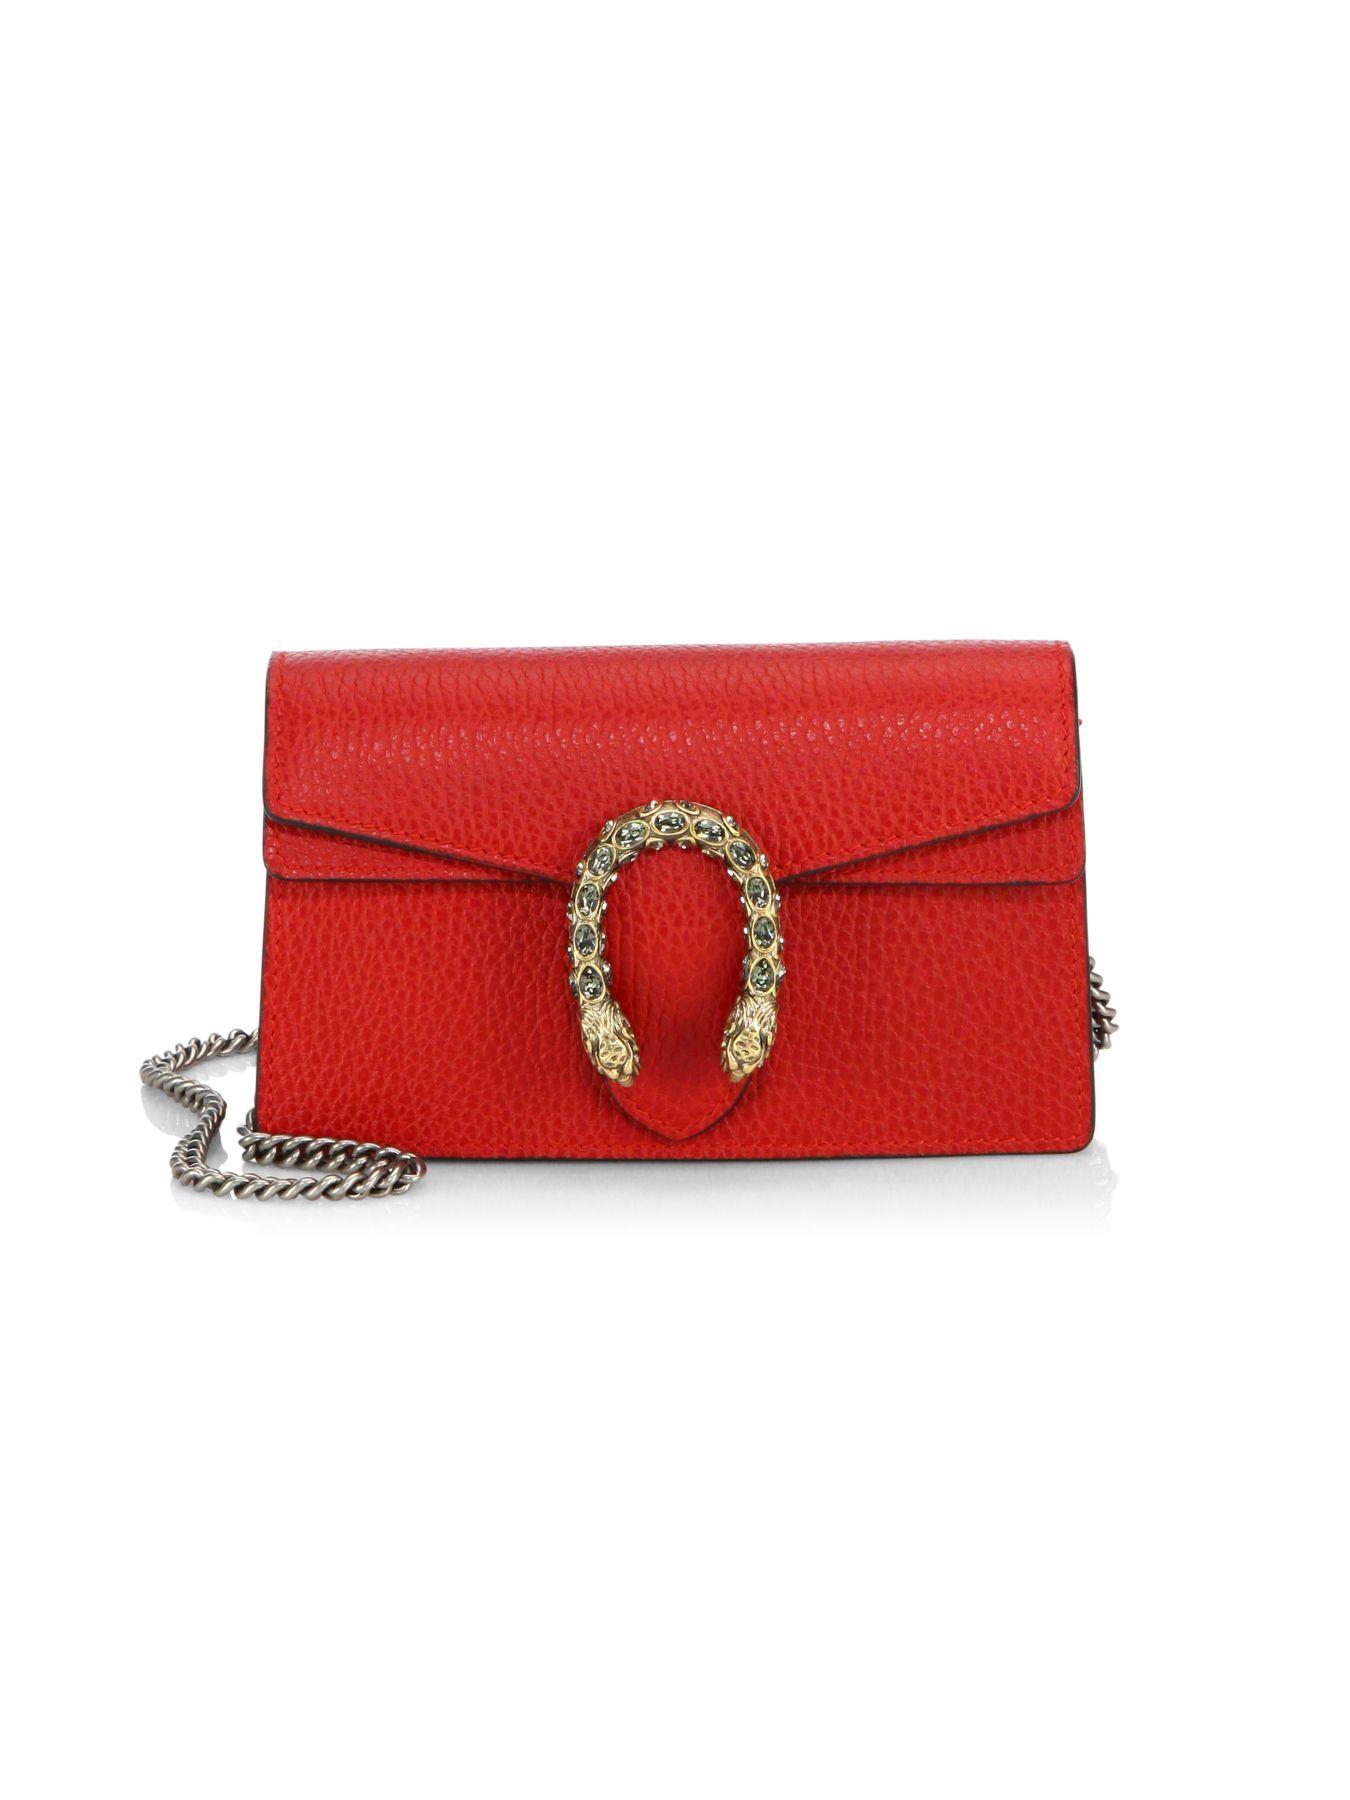 Gucci Dionysus Leather Super Mini Bag in Red - Lyst